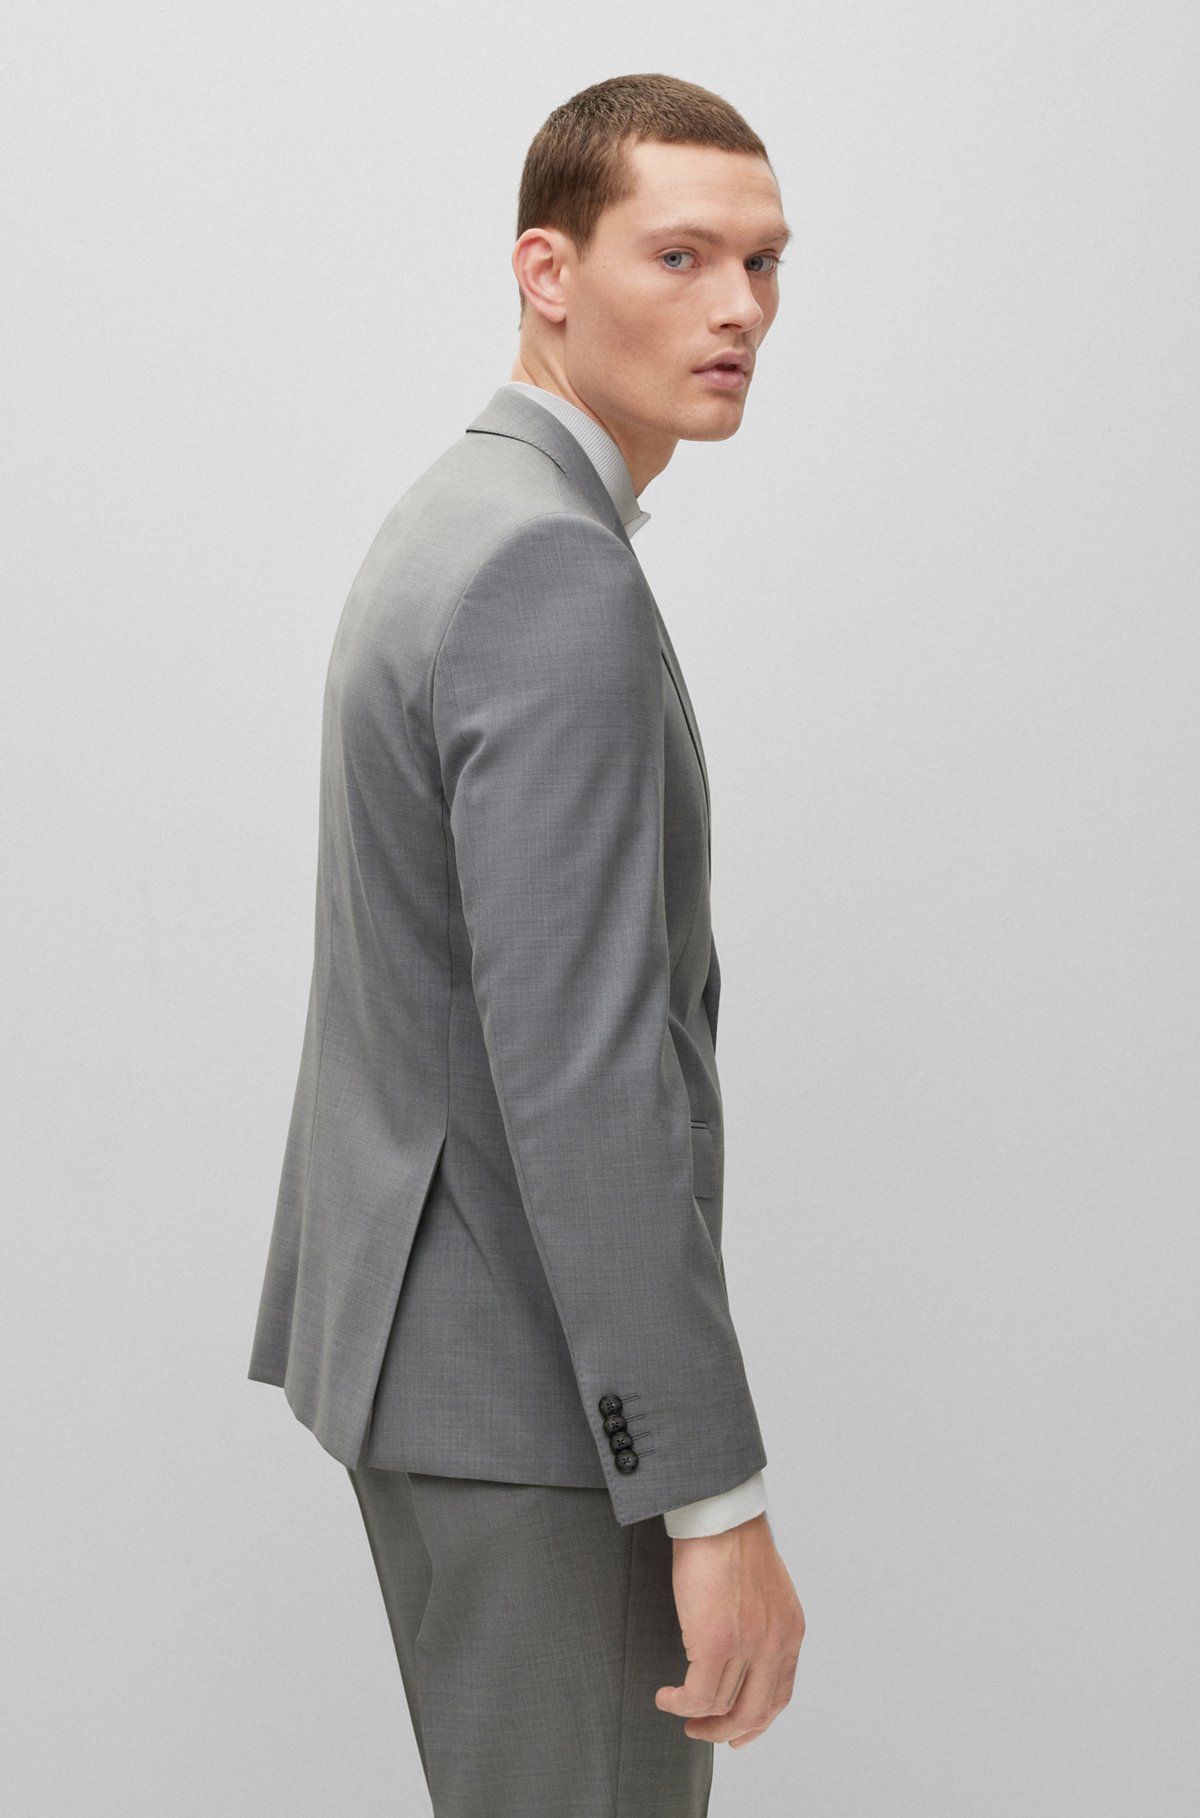 Slim-fit suit in melange stretch virgin wool, Silver